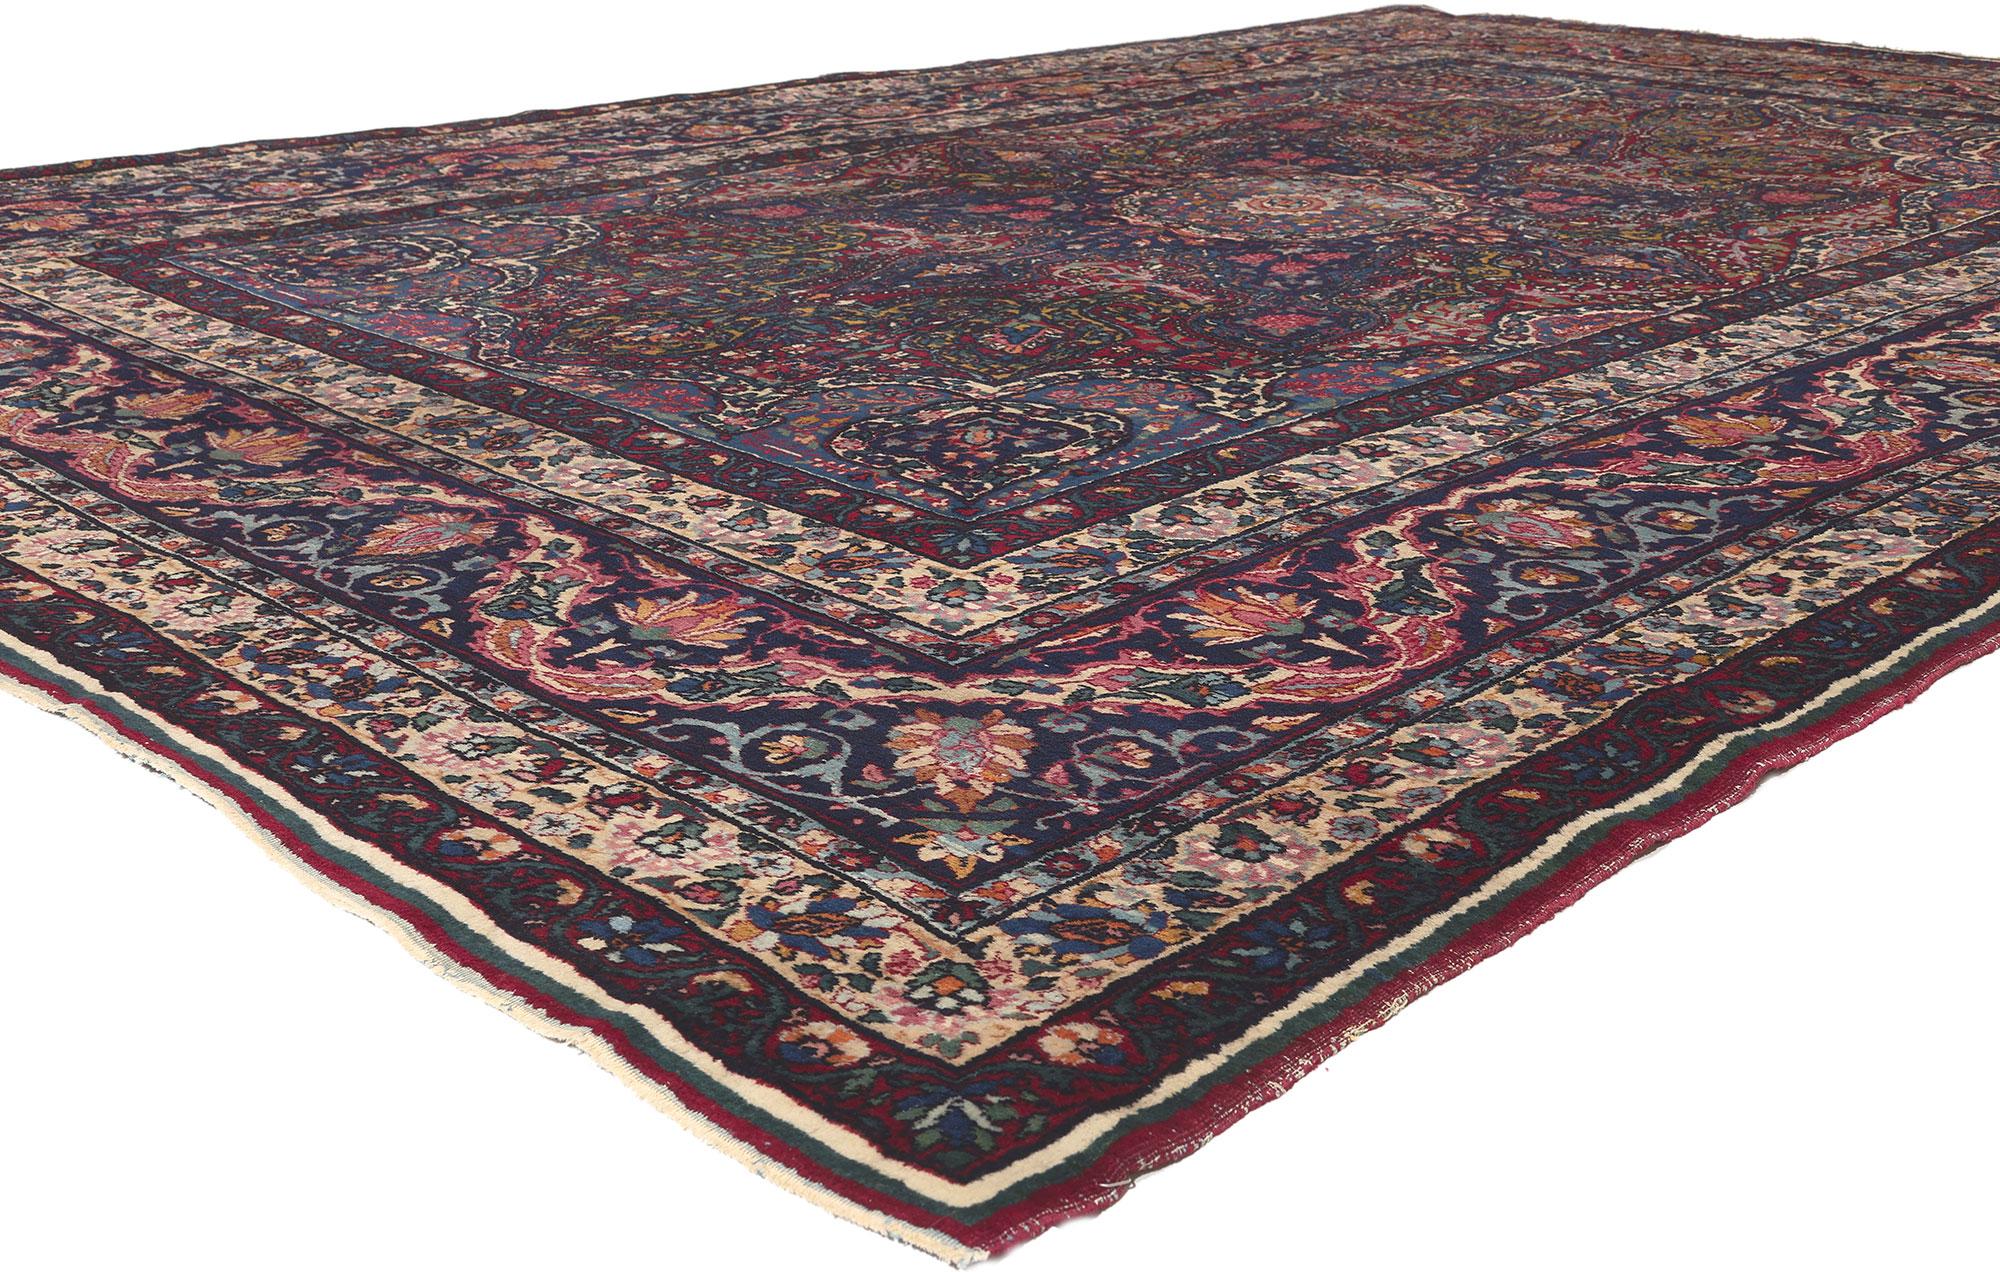 78643 Antiker persischer Yazd-Teppich, 08'10 x 13'00.
Traditionelle Sensibilität trifft bei diesem antiken persischen Yazd-Teppich auf nostalgischen Charme. Das hochdekorative Design und die traditionelle Farbpalette, die in dieses Stück eingewoben